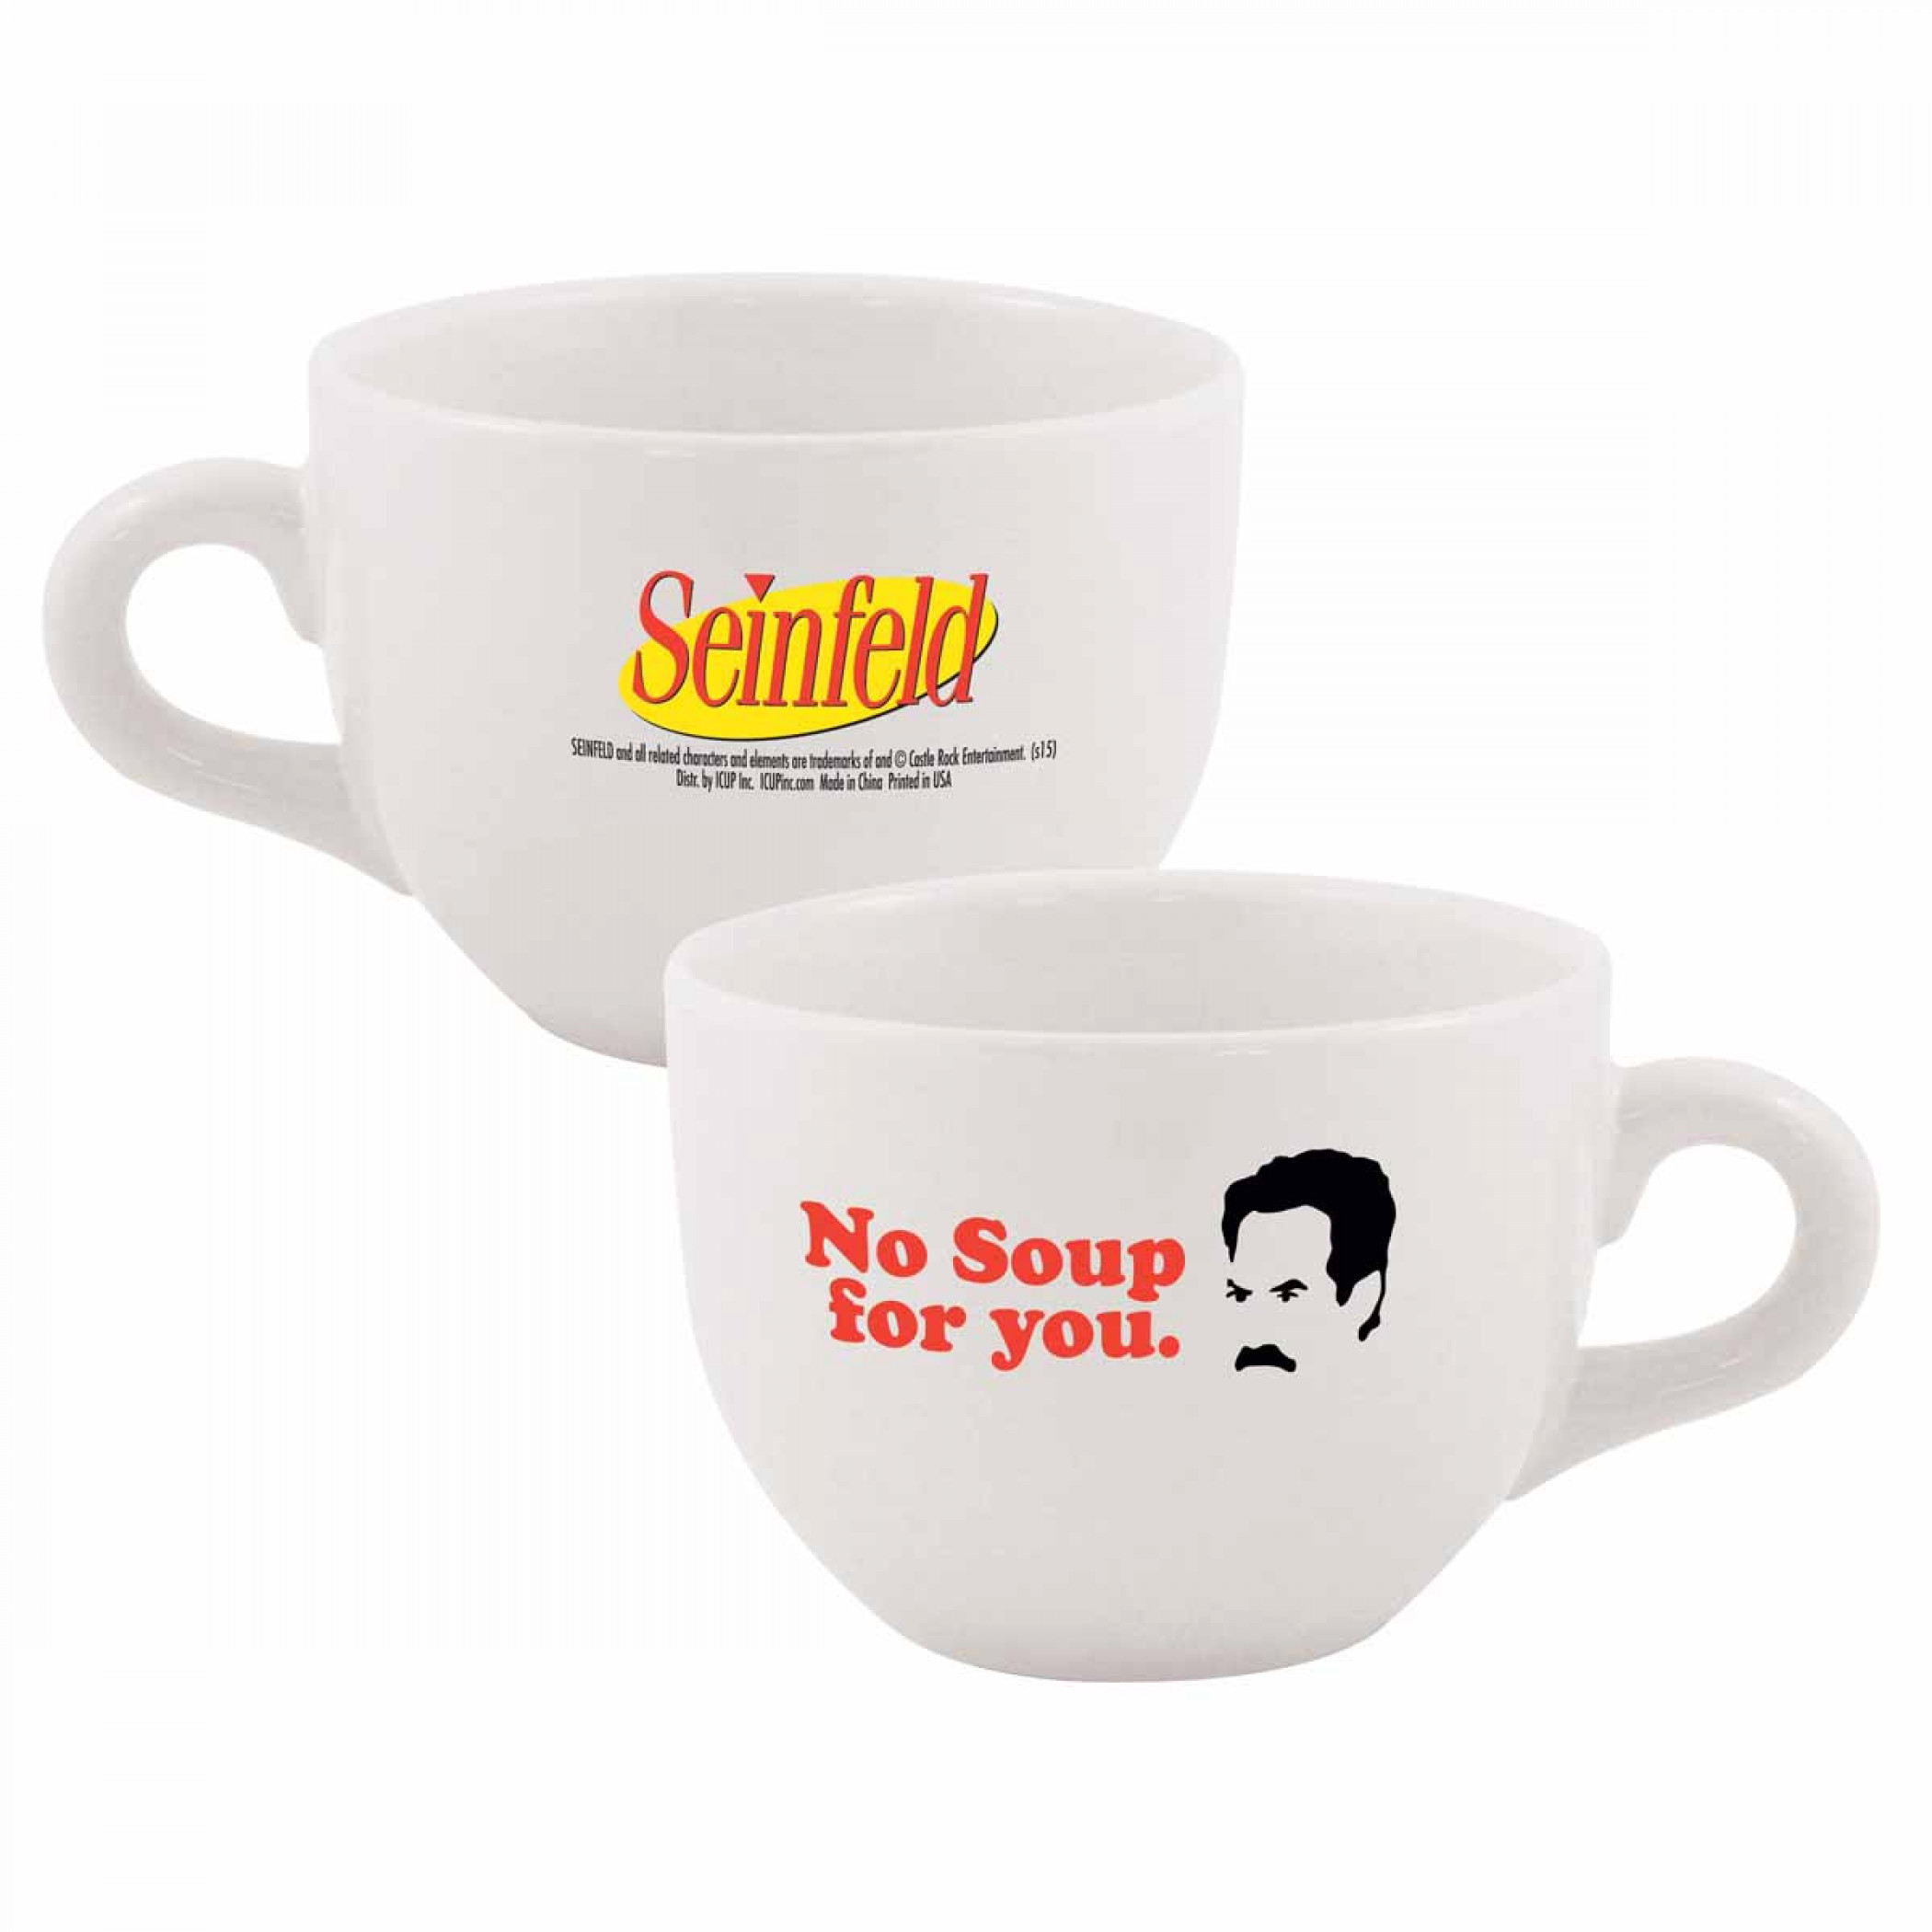 Seinfeld No Soup Ceramic Coffee Mug